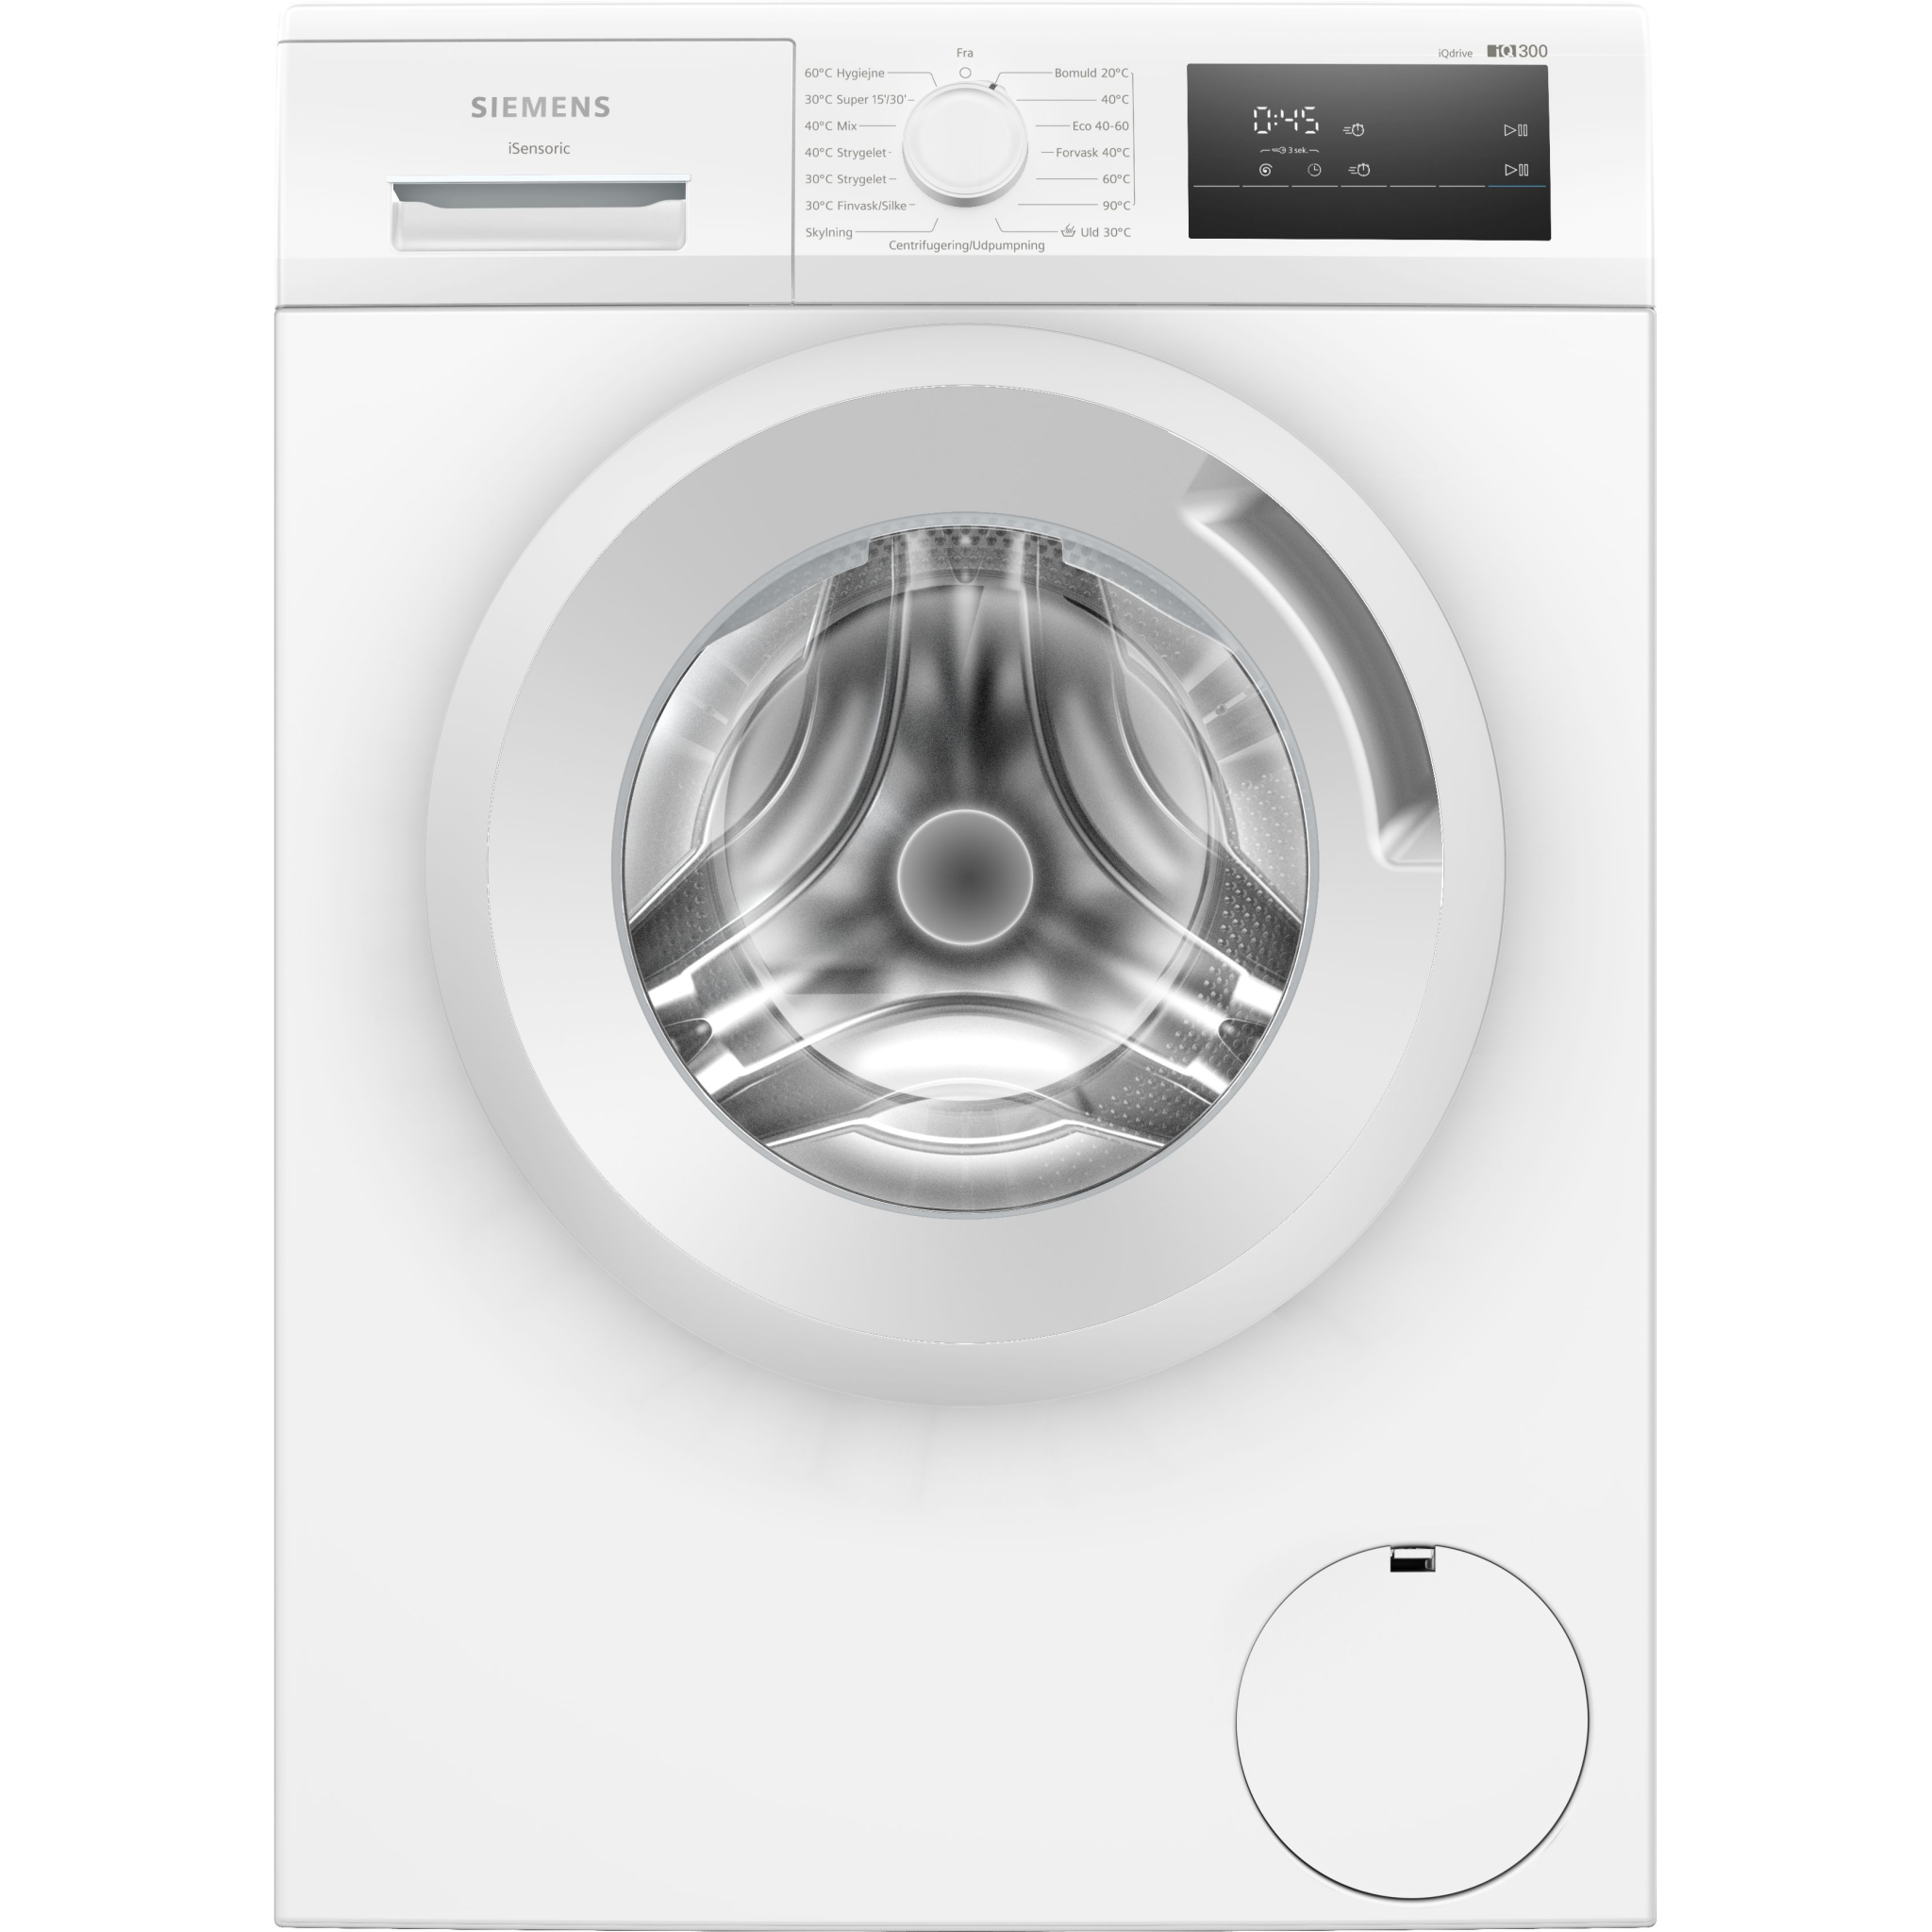 4242003921746 Siemens WM14N0L6DN - Frontbetjent vaskemaskine Hvidevarer,Vaskemaskine,Frontbetjente vaskemaskiner 11400007430 WM14N0L6DN